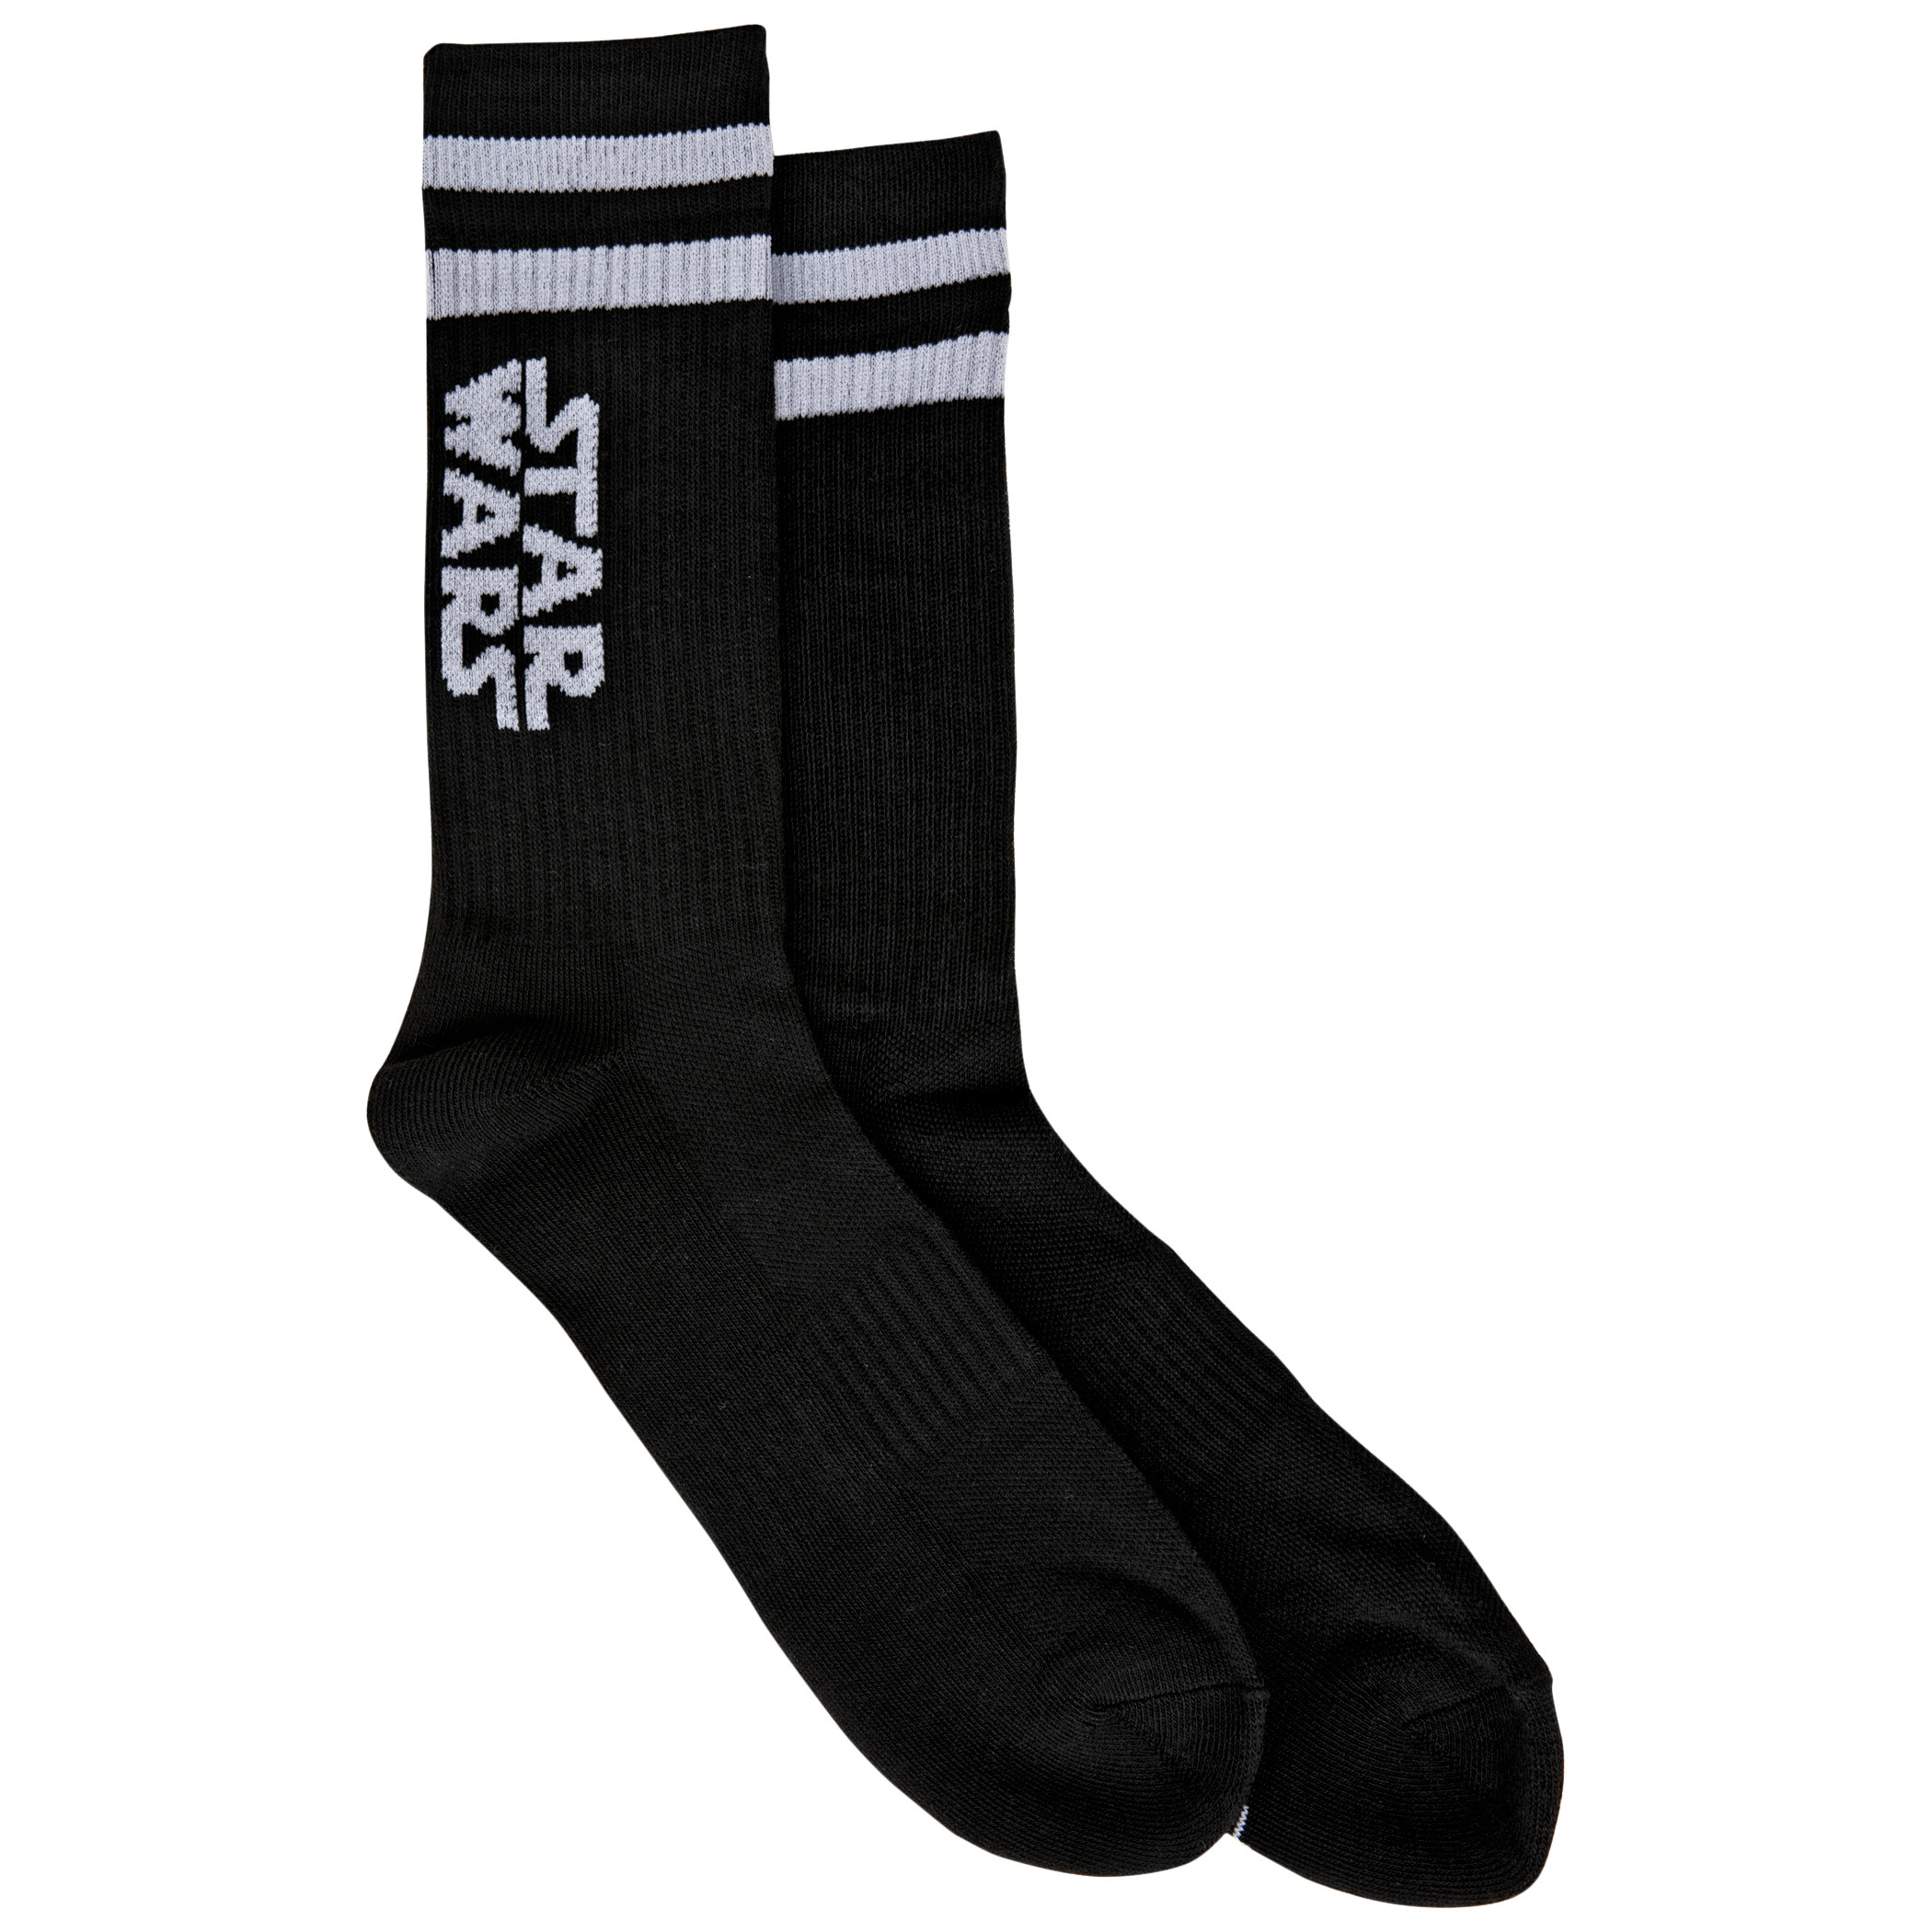 Star Wars Logos with Stripes Crew Socks